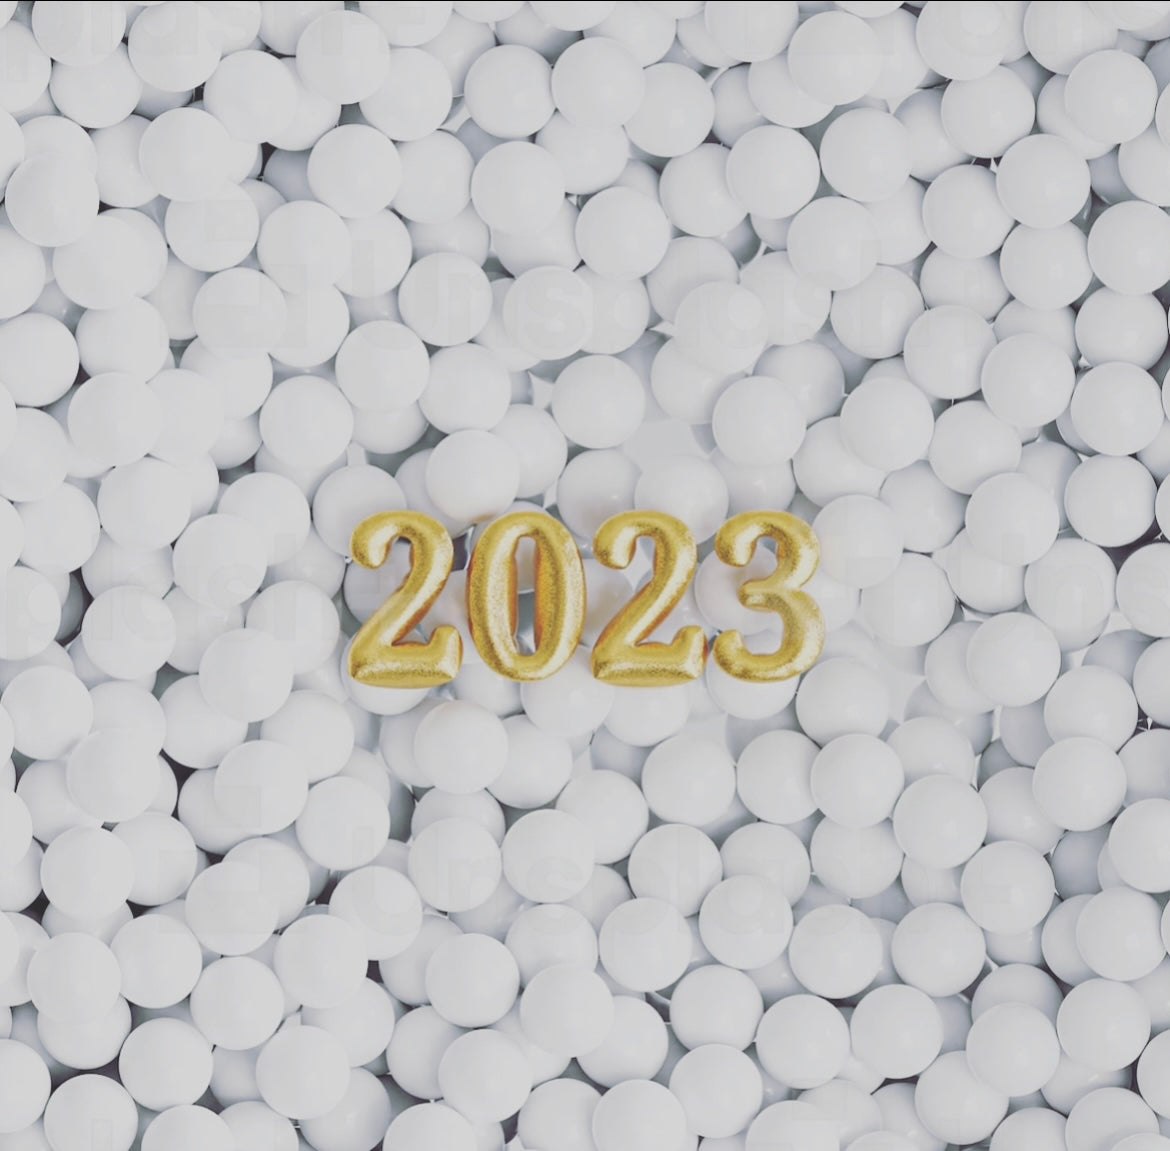 Happy Sustainable 2023!